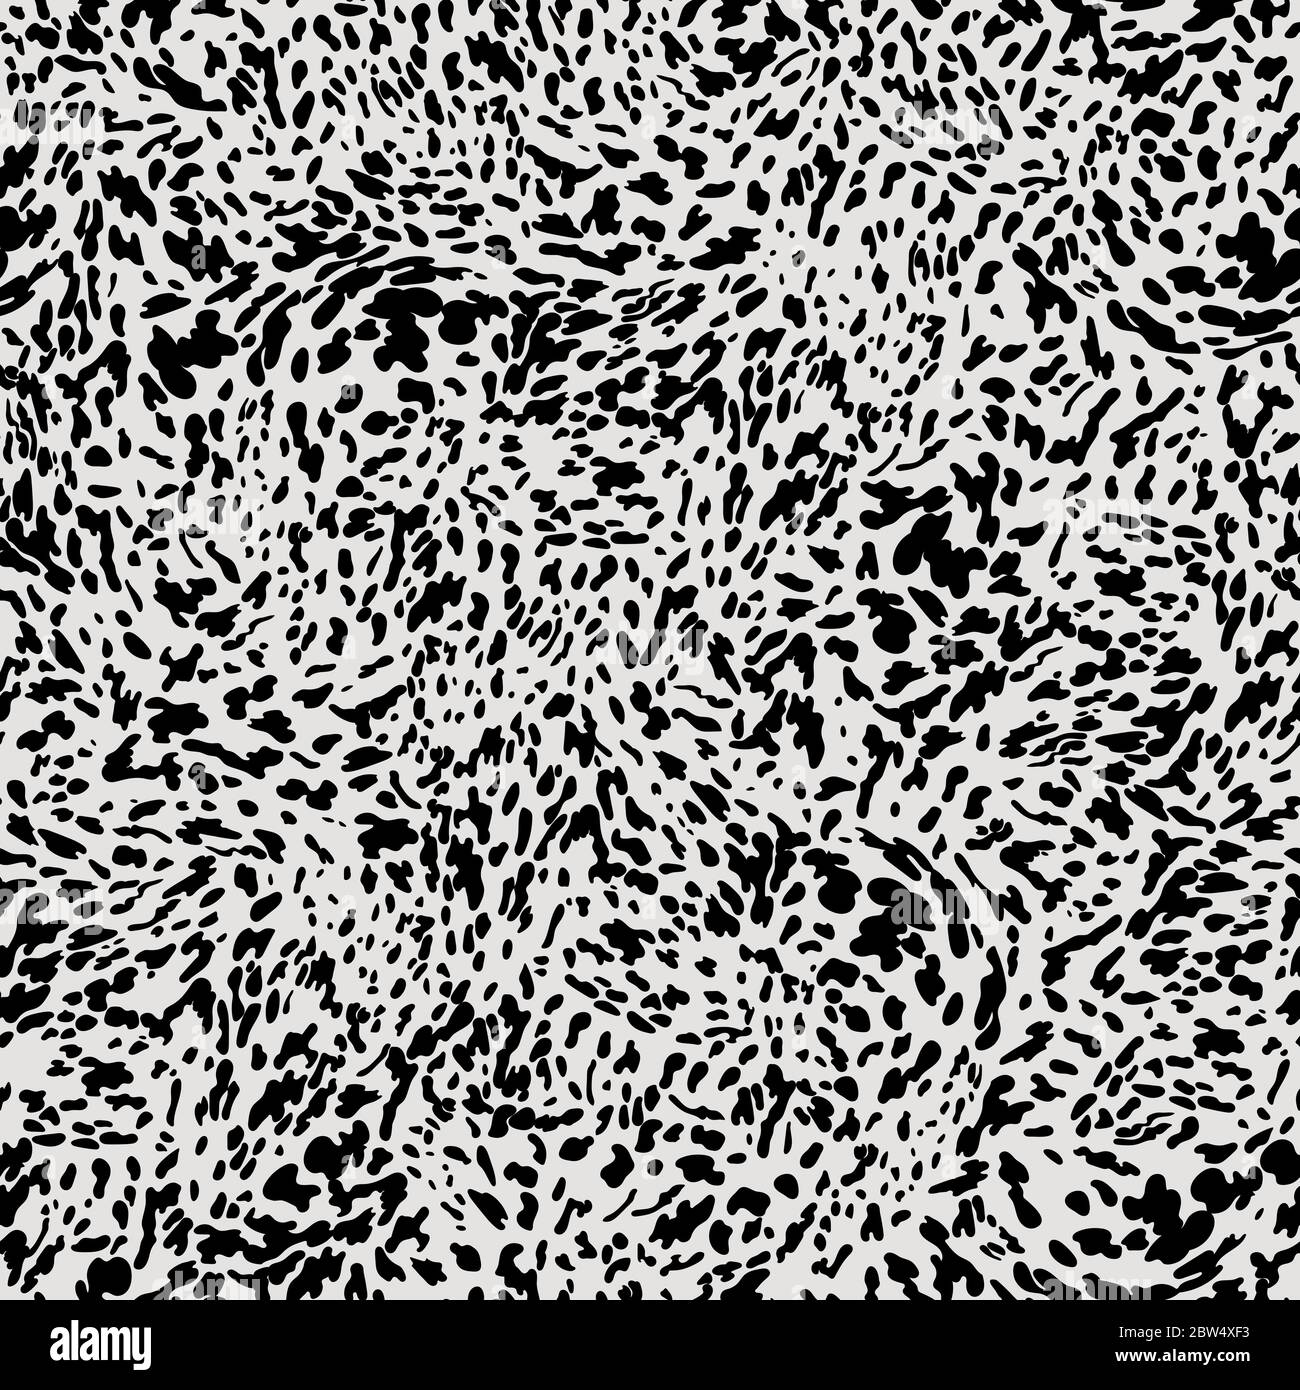 Diseño de patrón sin costuras con estampado animal de Appaloosa. Leopardo, piel de vaca, patrón de piel de caballo con pequeñas manchas negras sobre fondo blanco. Estampado animal Ilustración del Vector